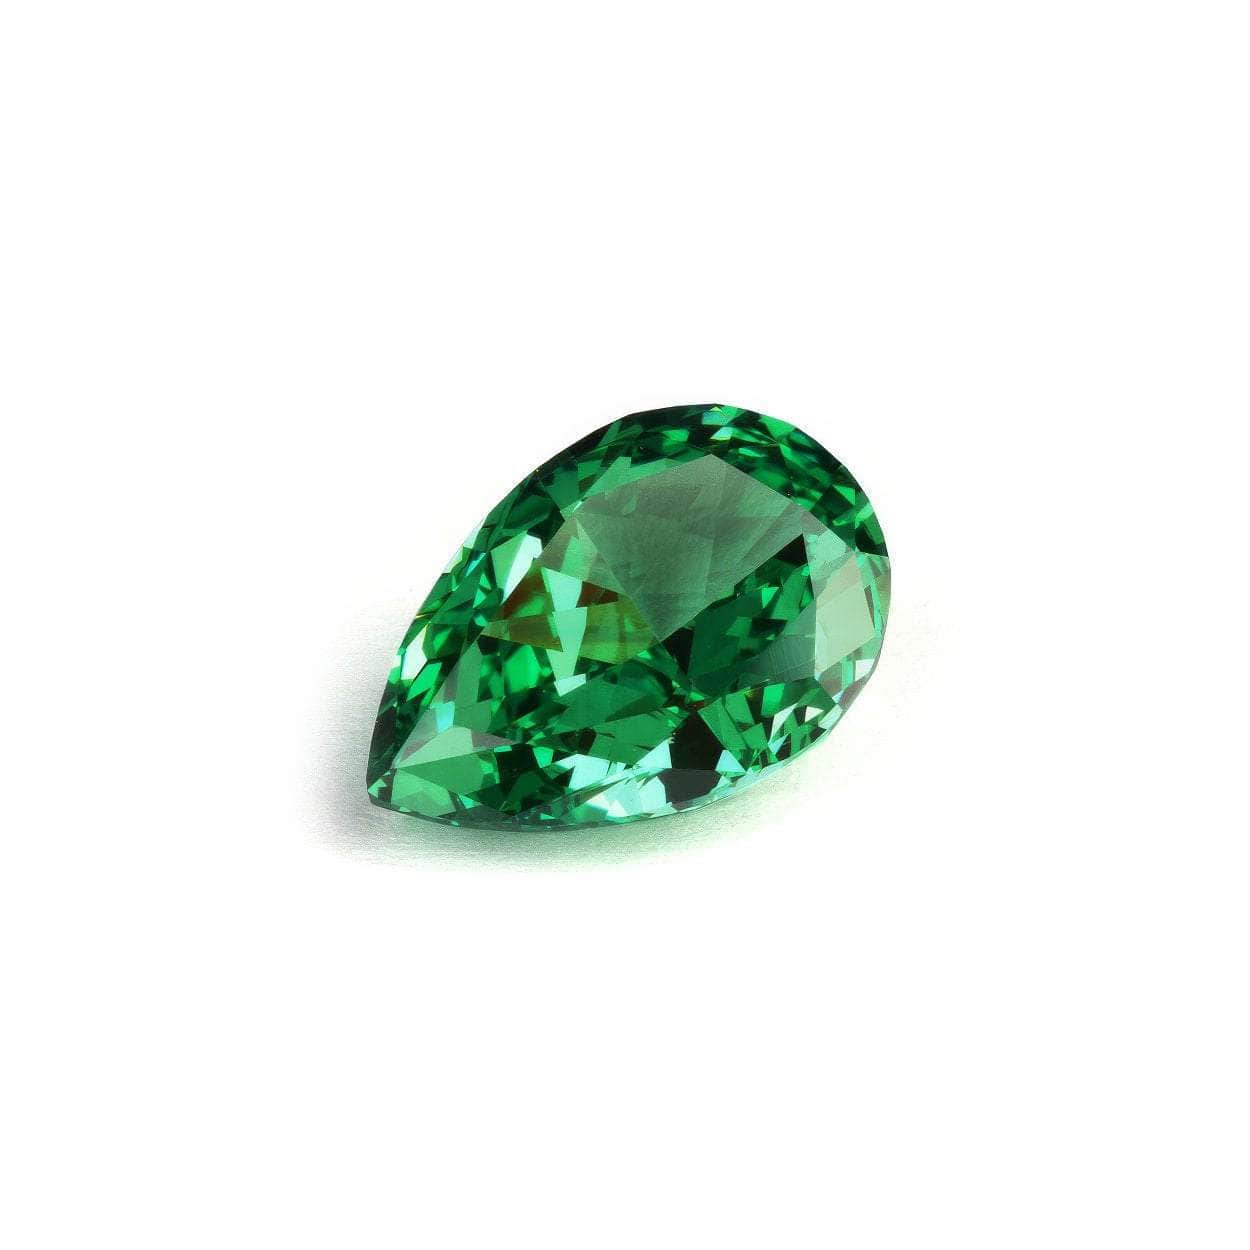 3 Set Of Emerald Pear-Cut Lab-Grown Diamond Gemstone